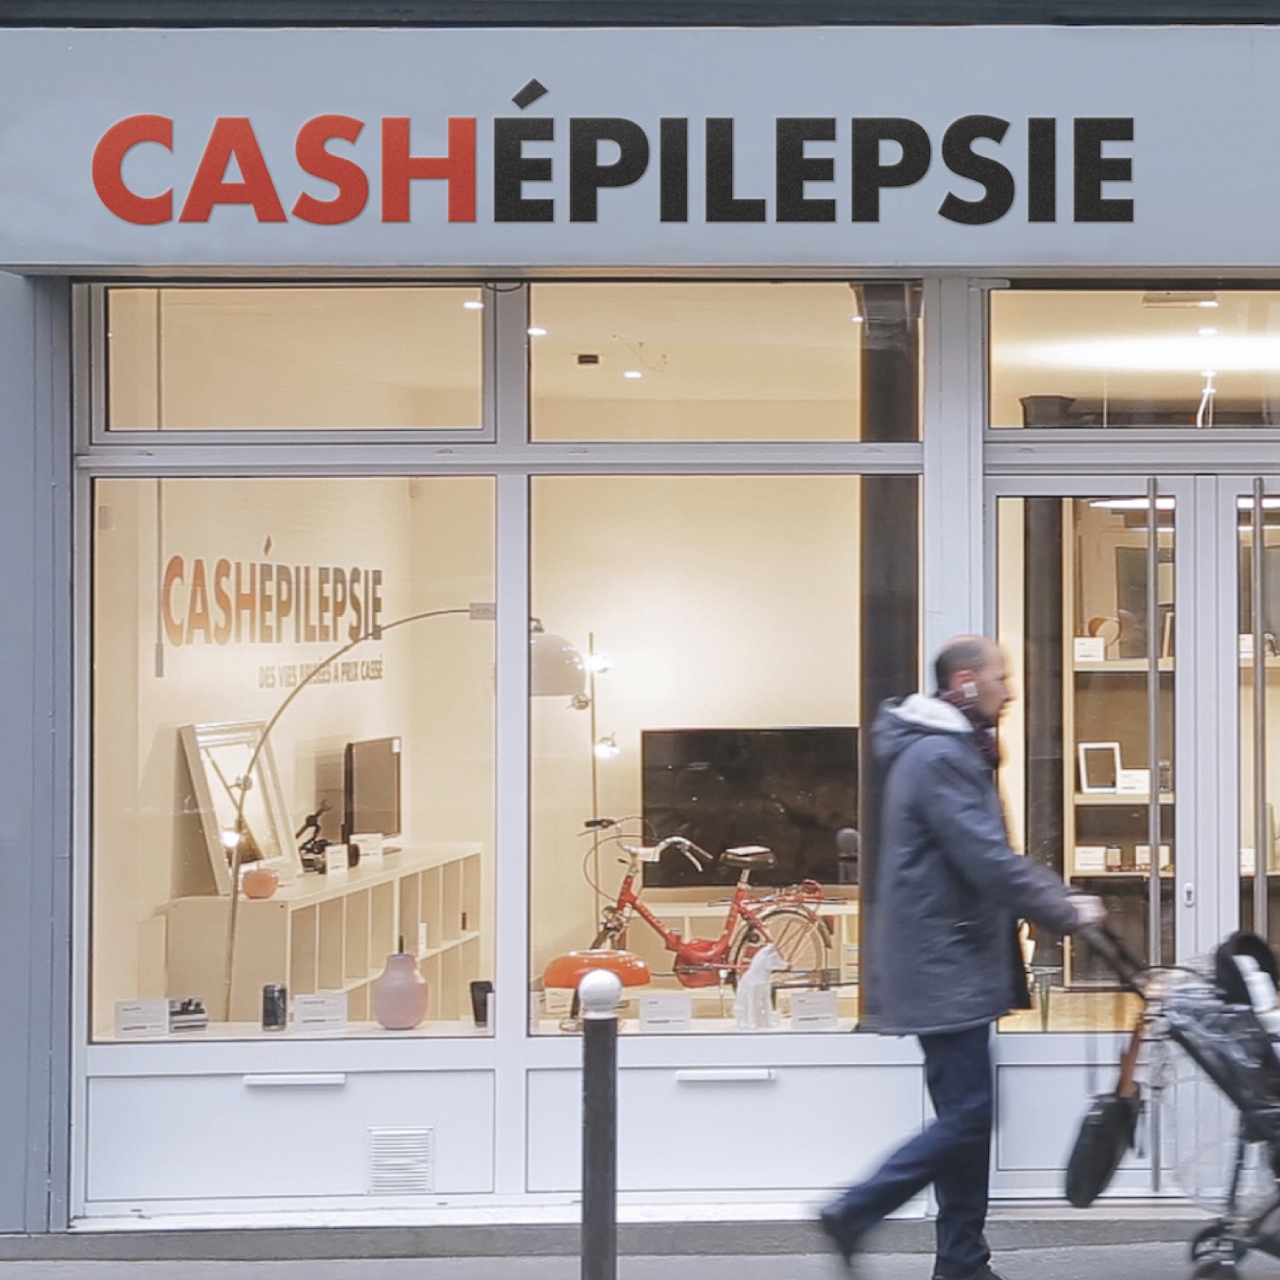 Cash Epilepsie